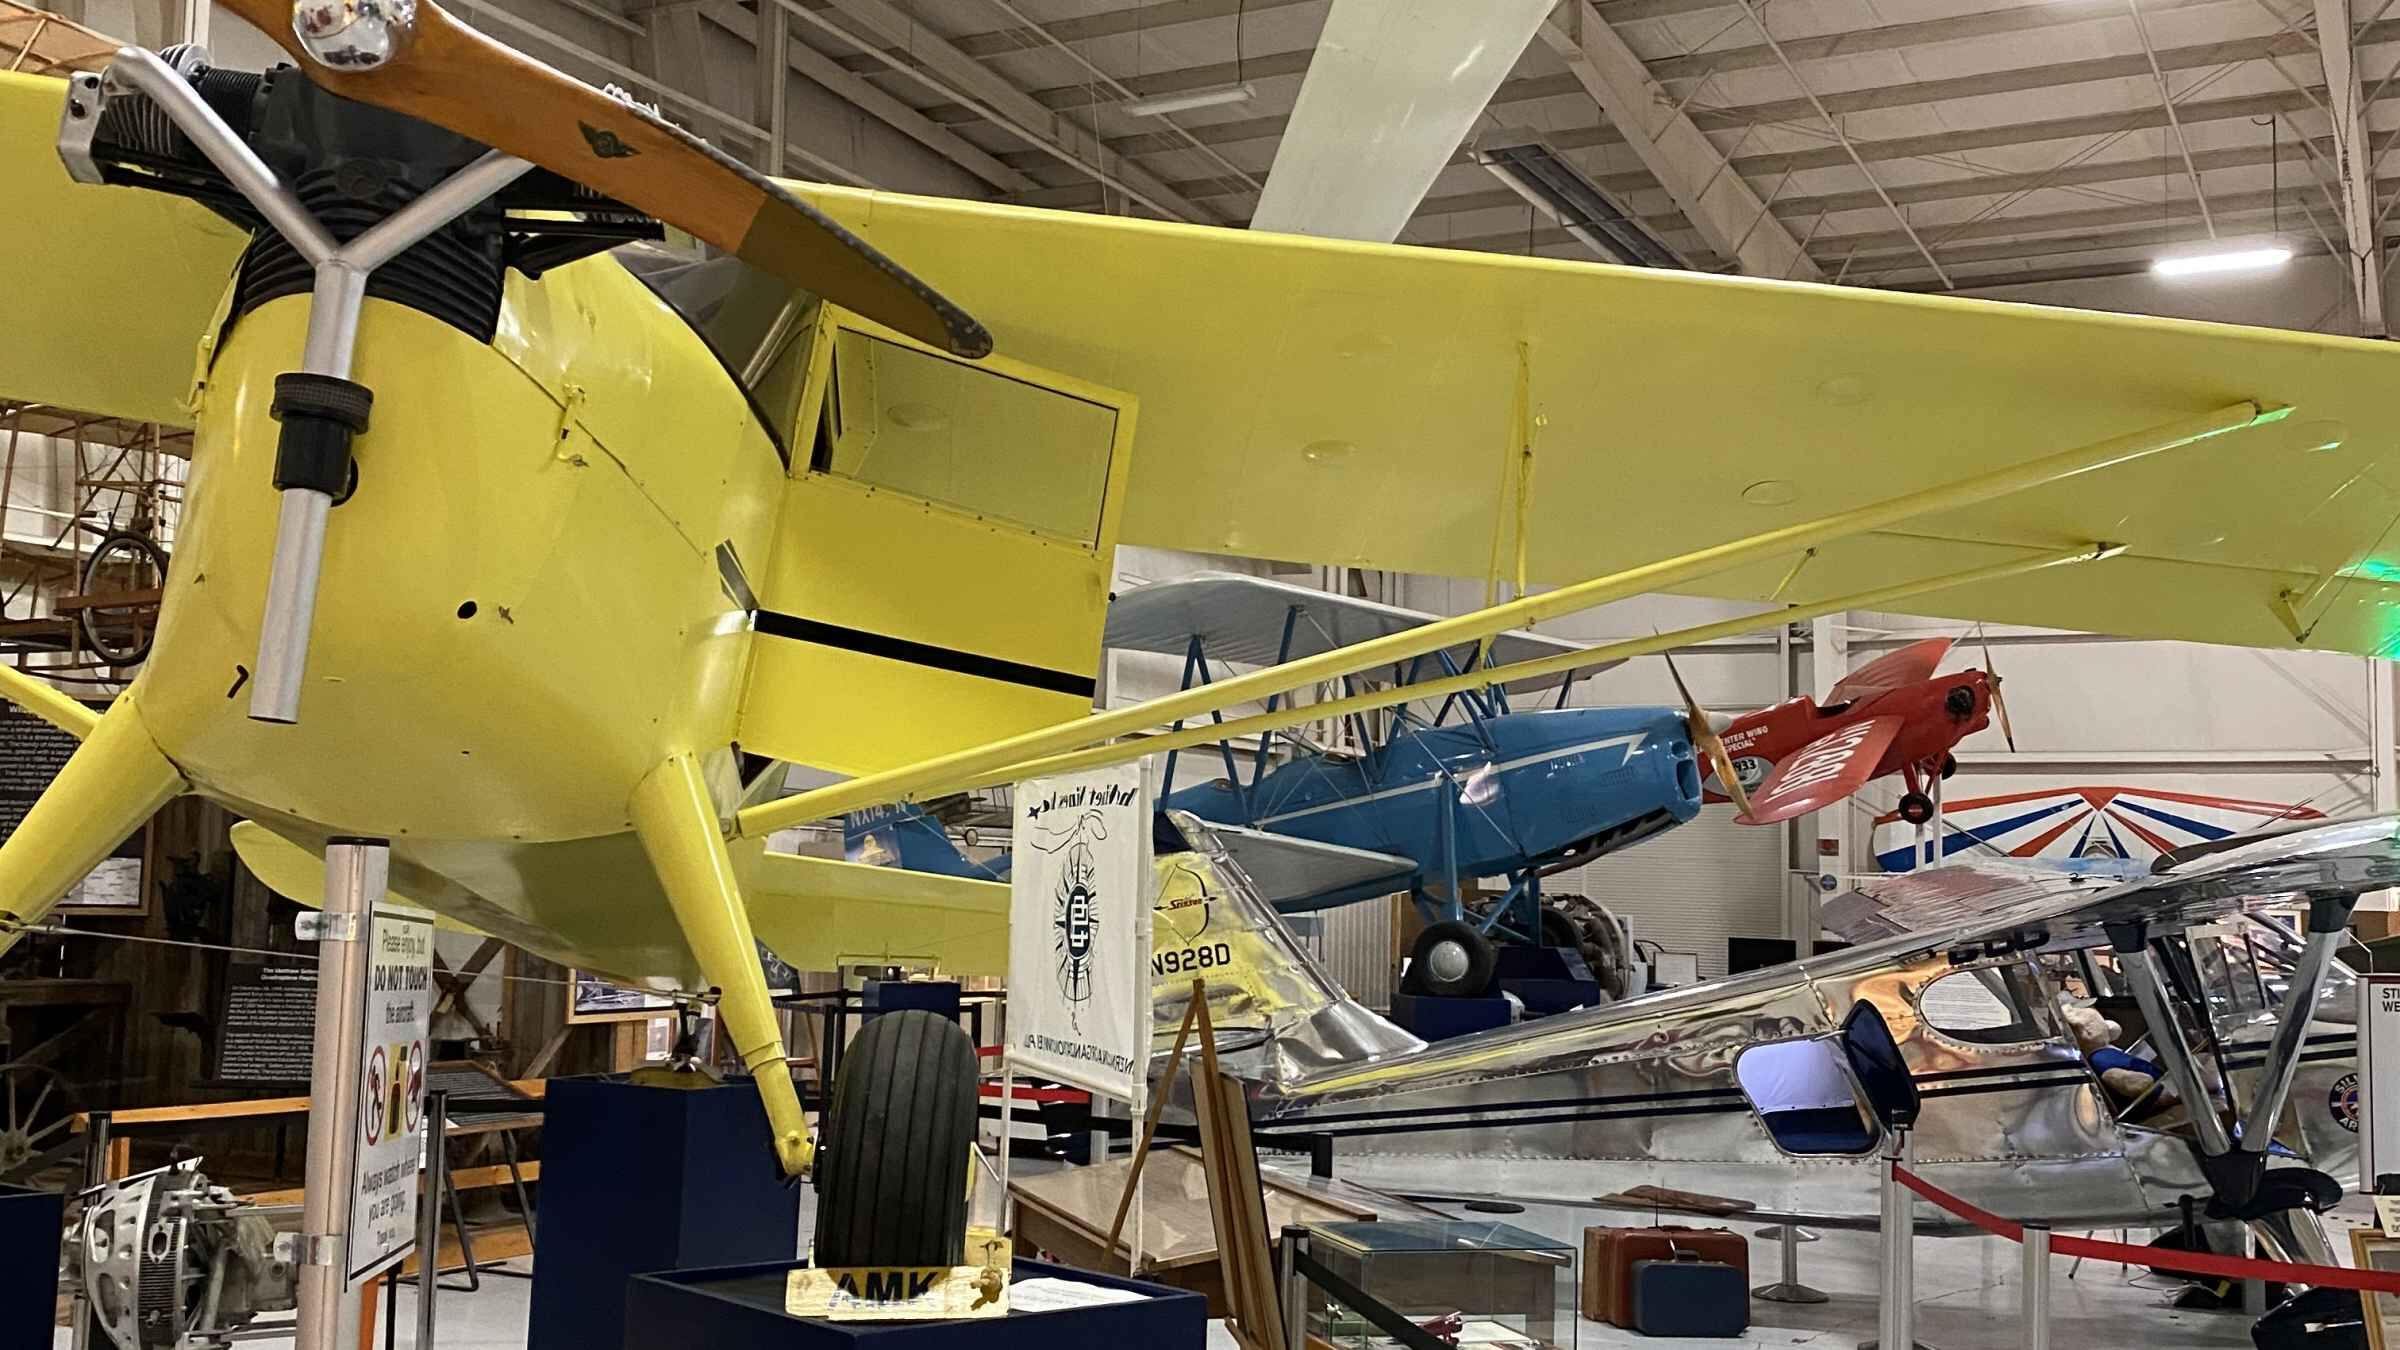 Aviation Museum of Kentucky